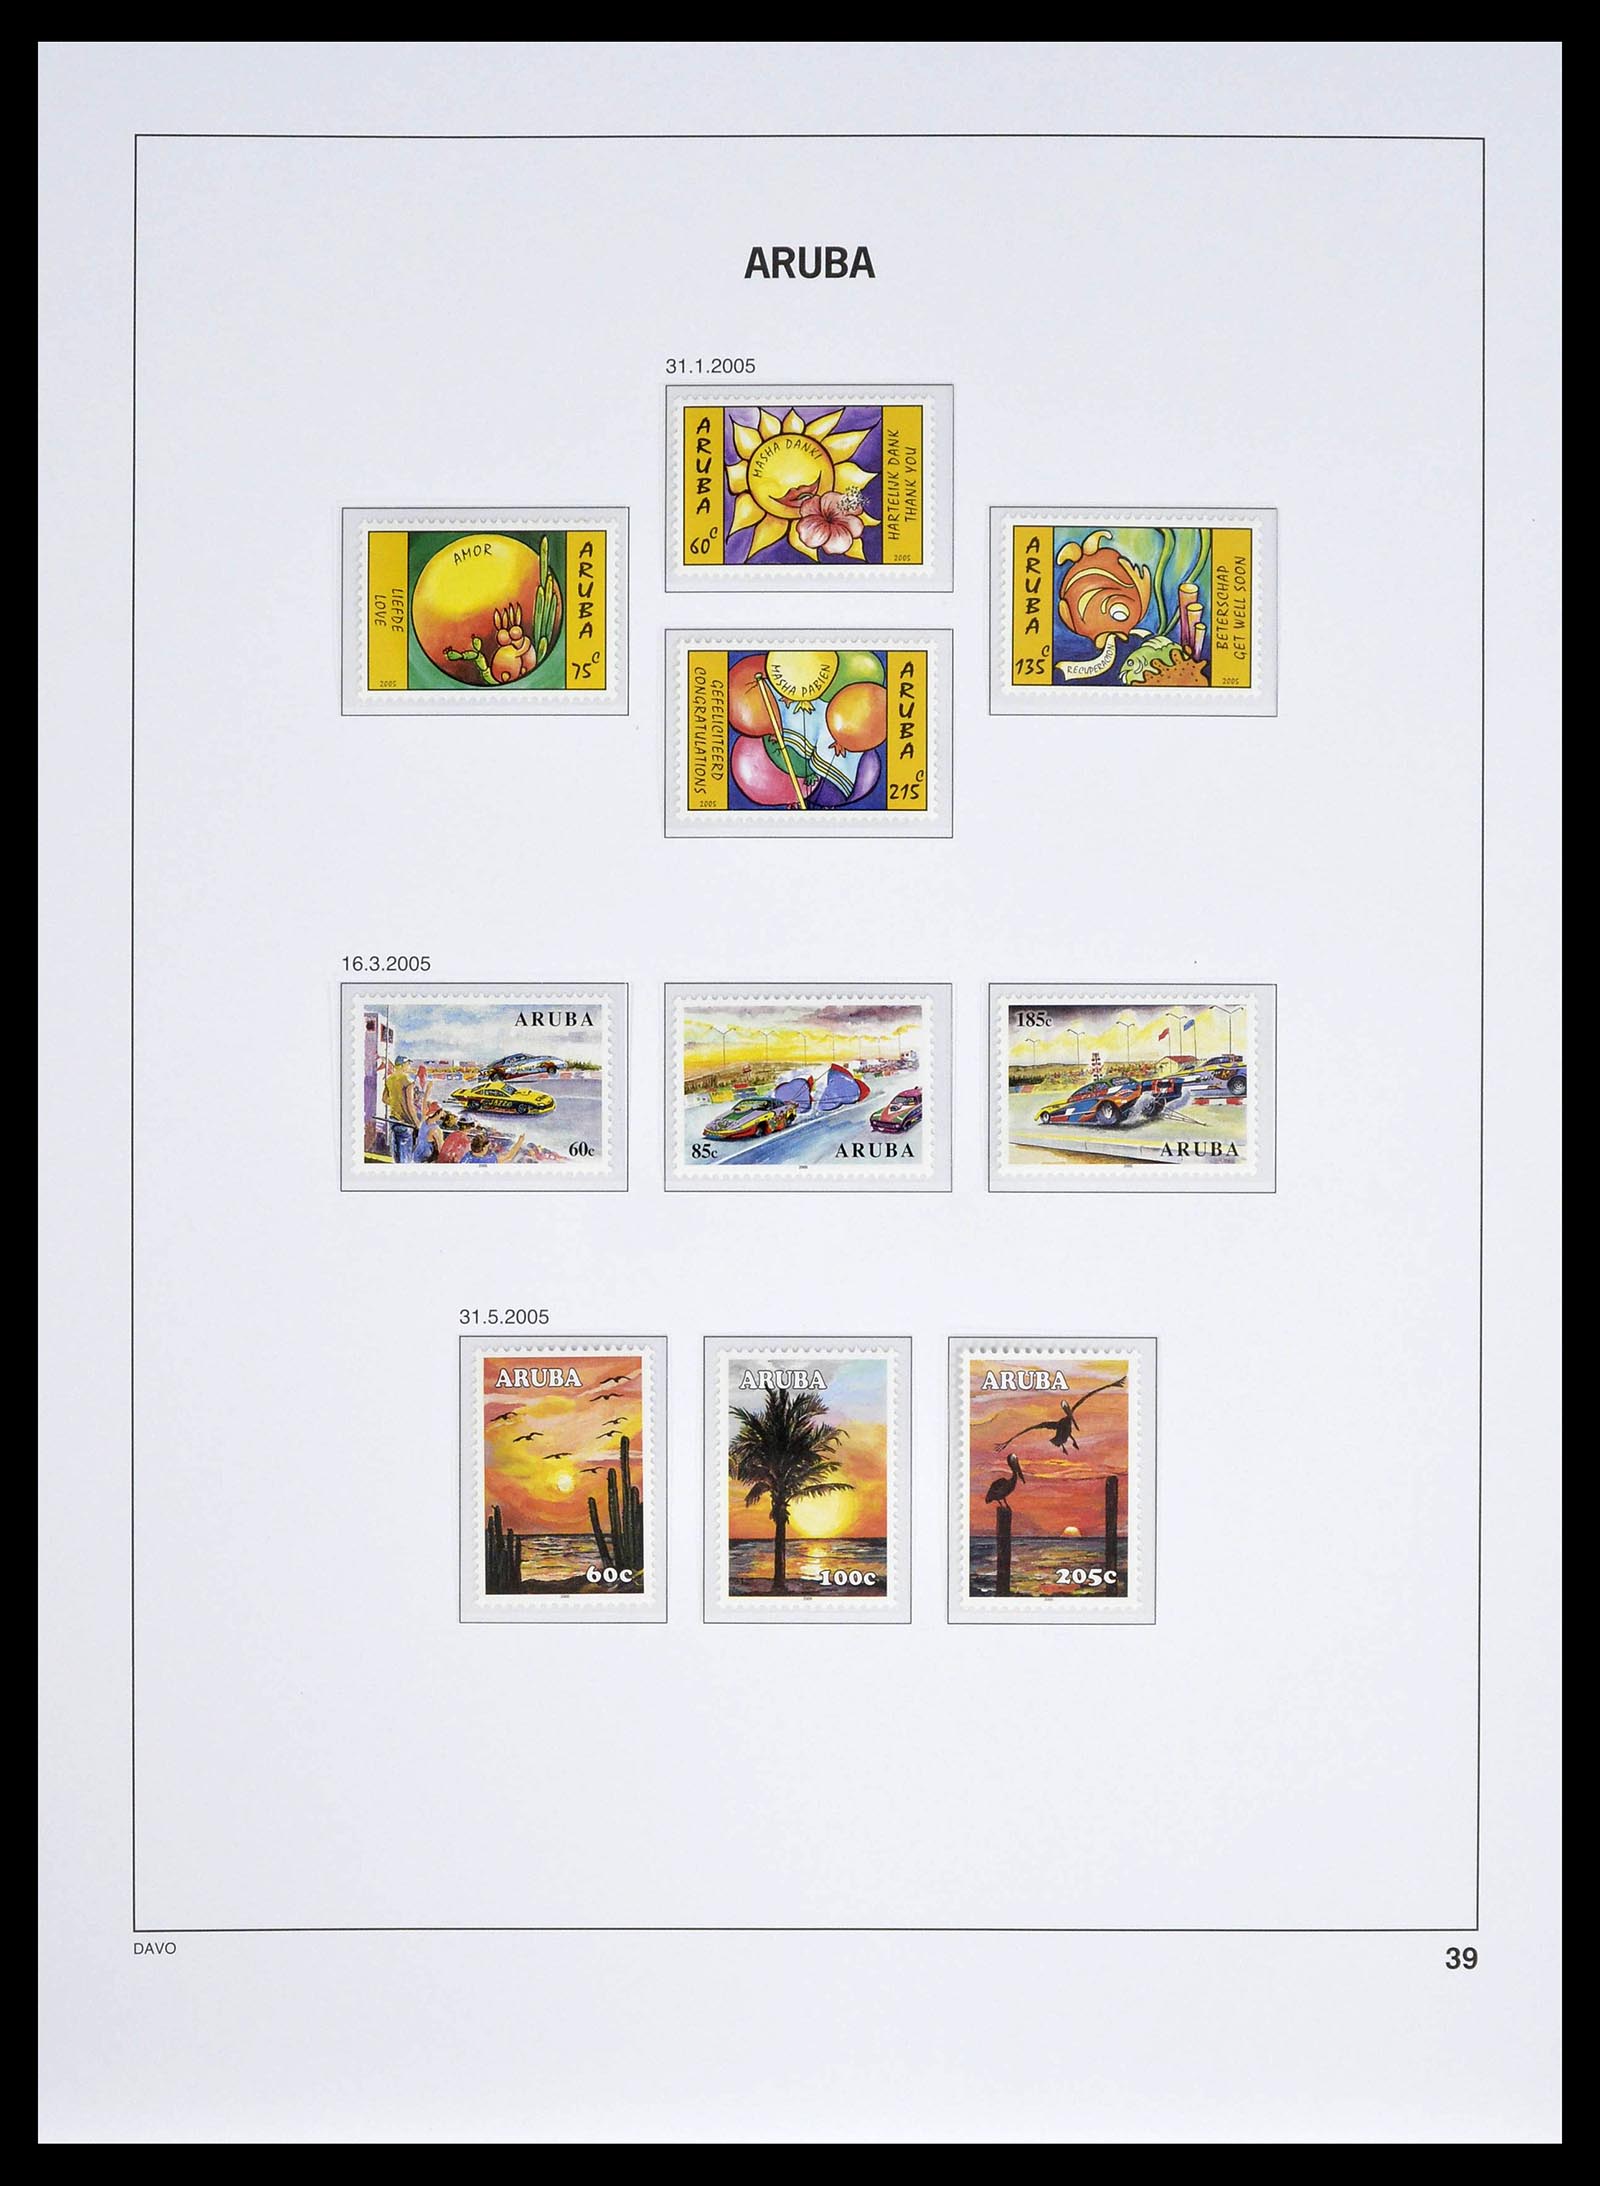 39361 0039 - Stamp collection 39361 Aruba 1986-2013.